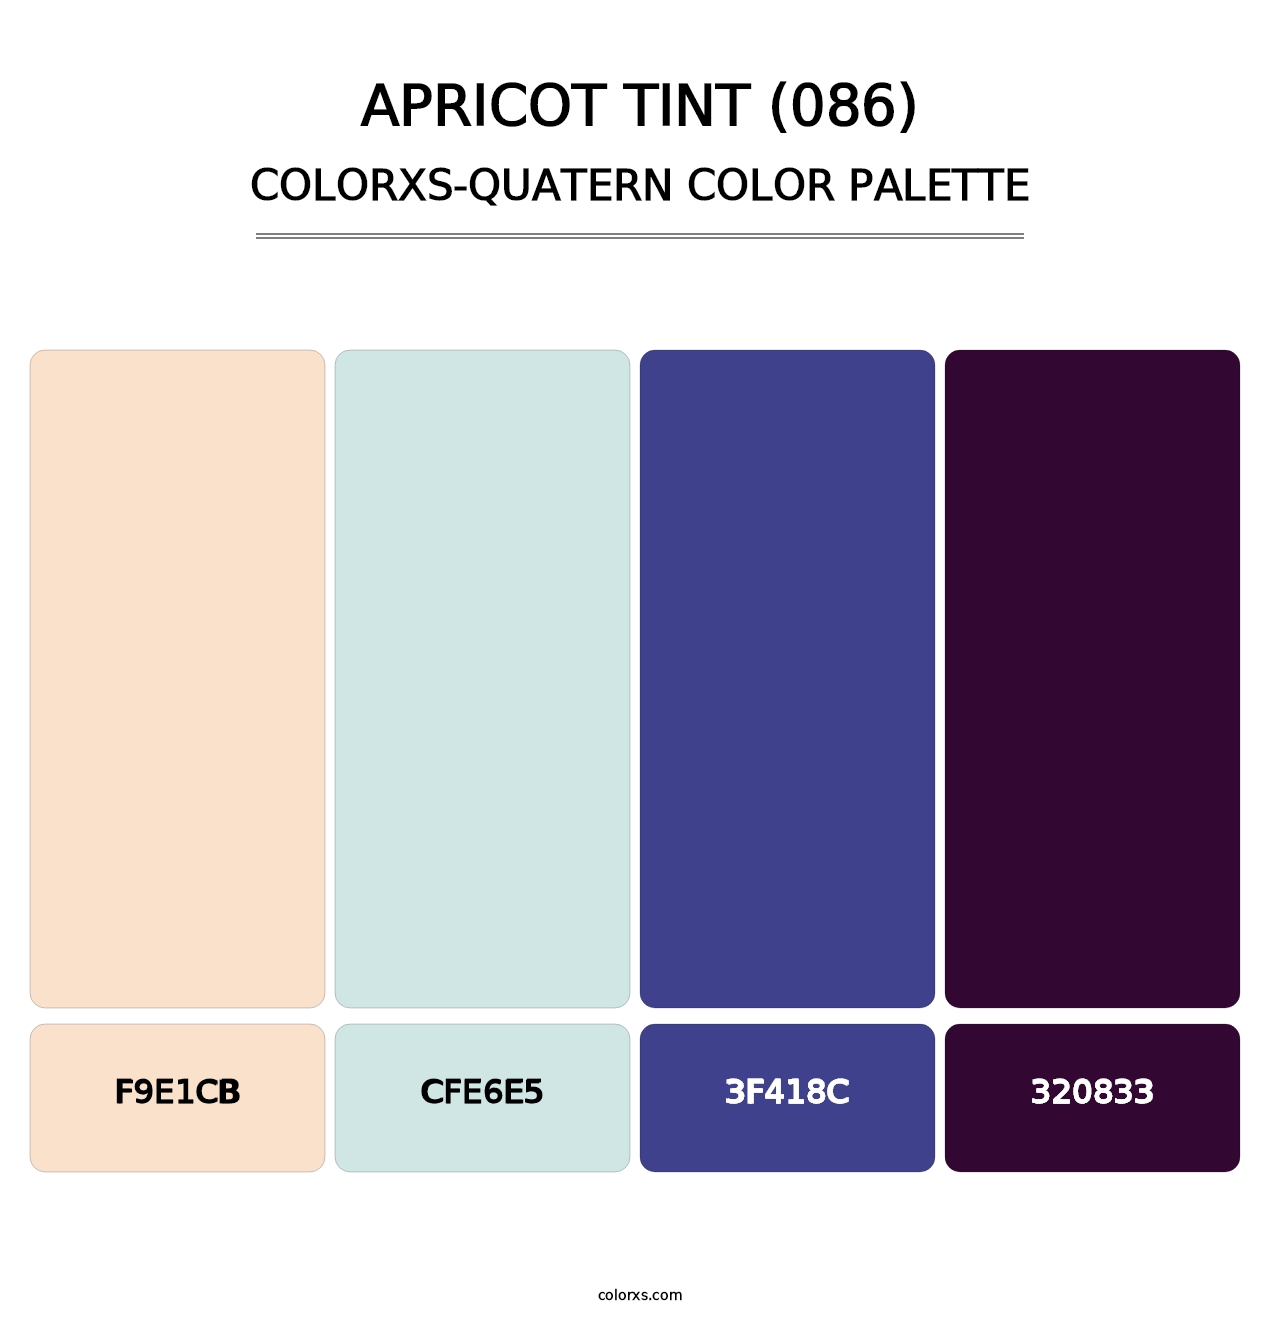 Apricot Tint (086) - Colorxs Quatern Palette